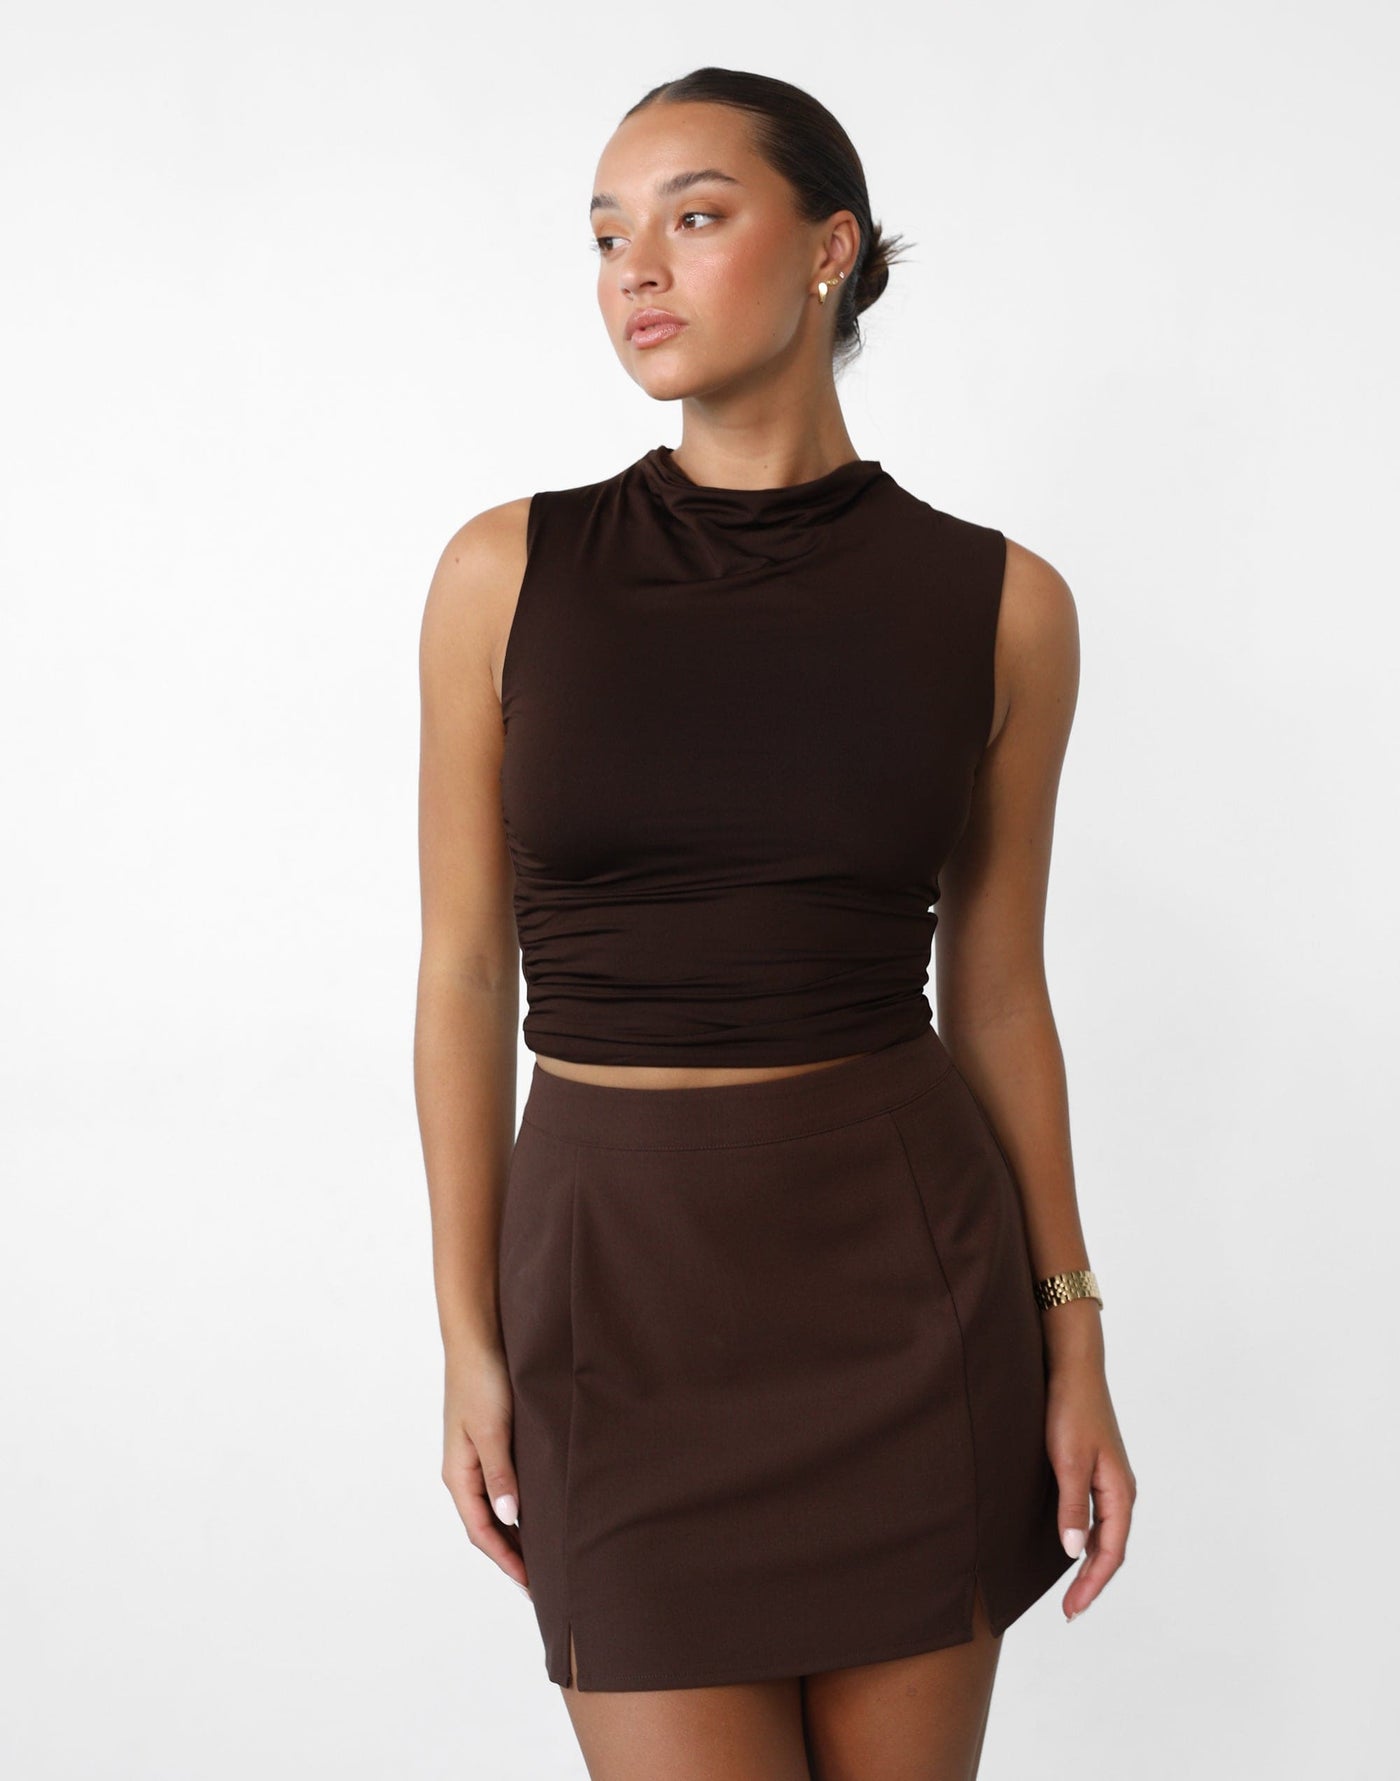 Amerie Mini Skirt (Brown) - Brown High Waisted Mini Skirt - Women's Skirt - Charcoal Clothing